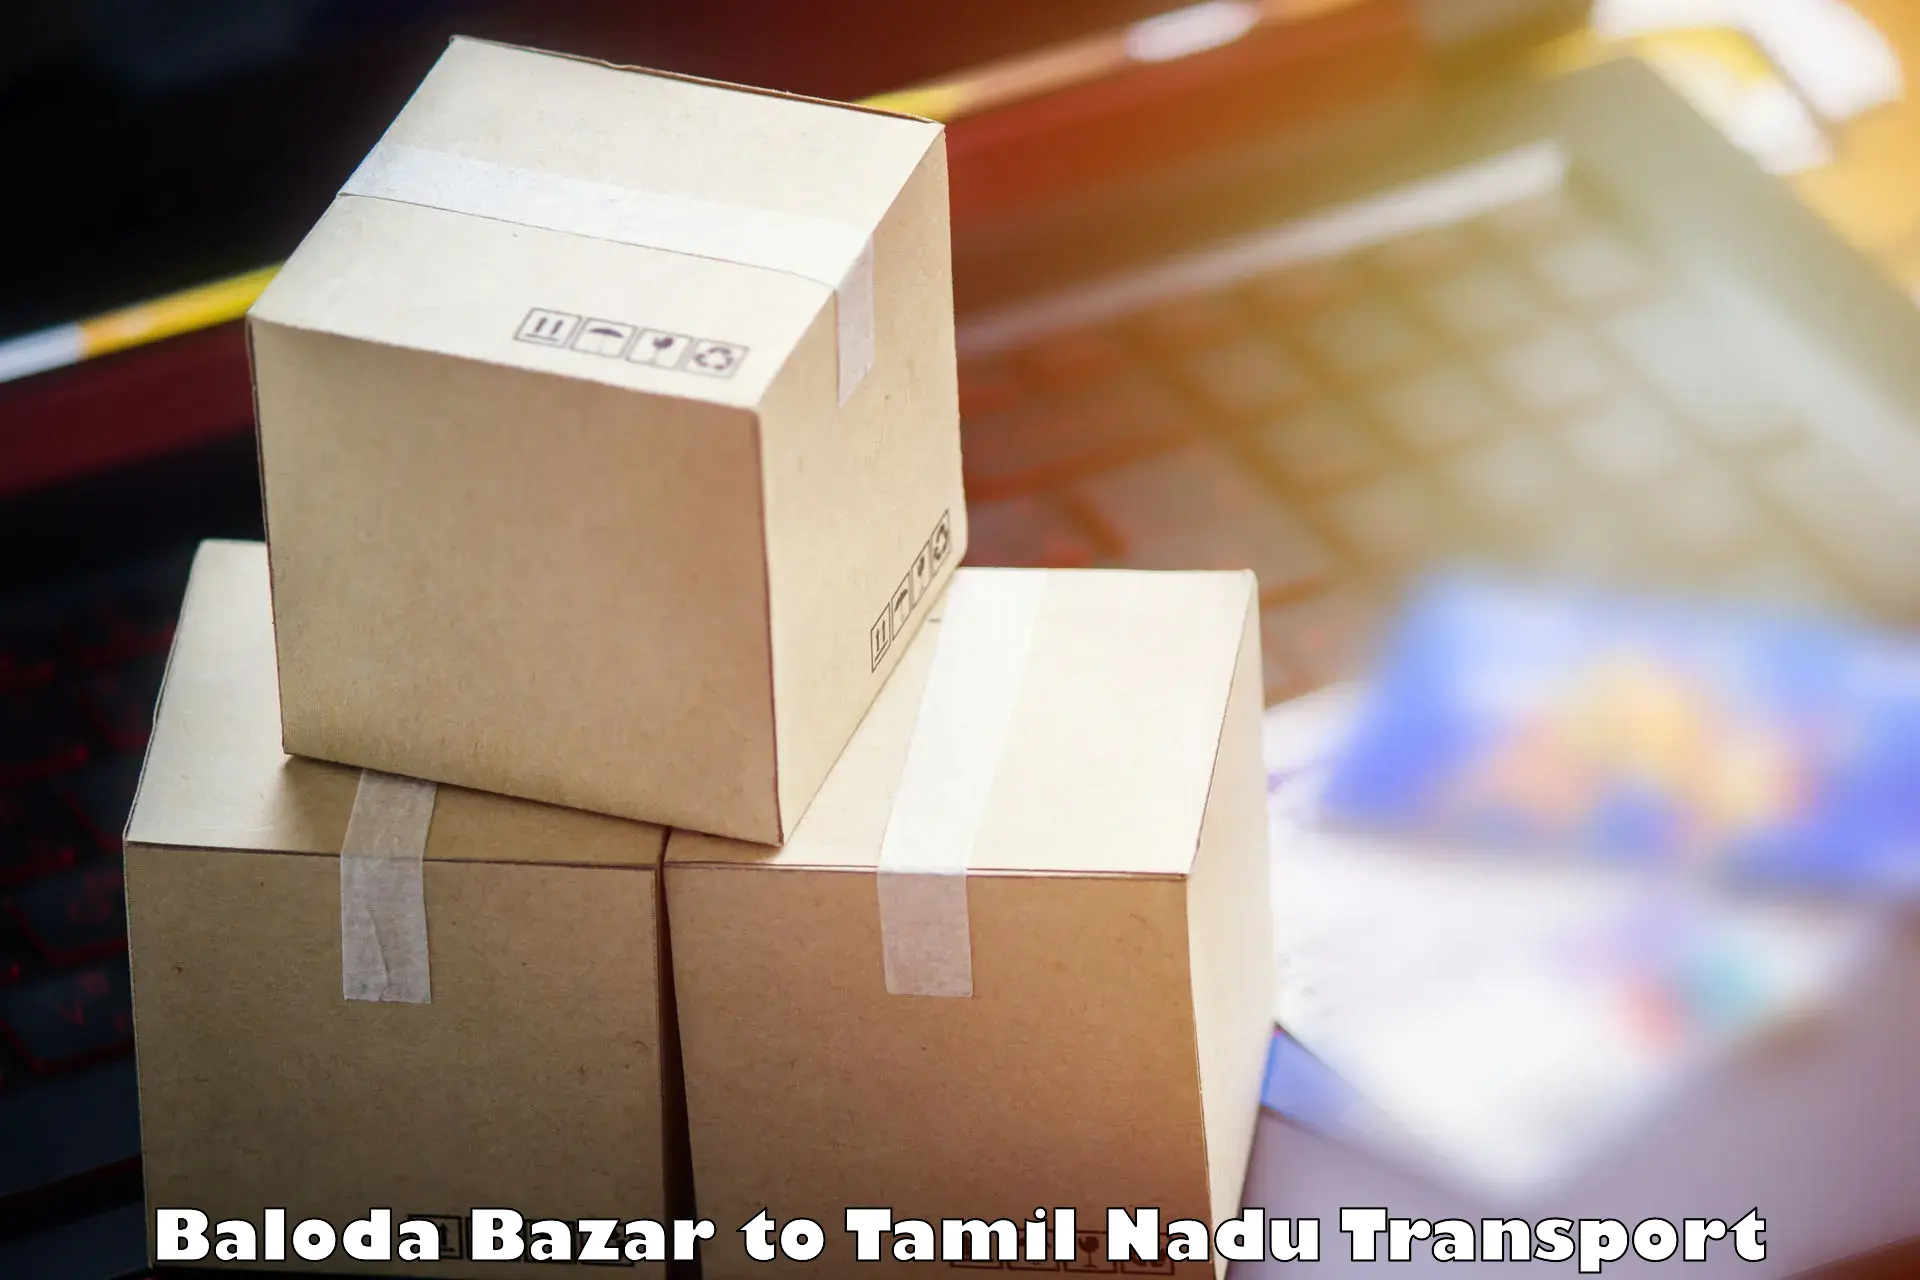 Daily parcel service transport Baloda Bazar to Lalpet